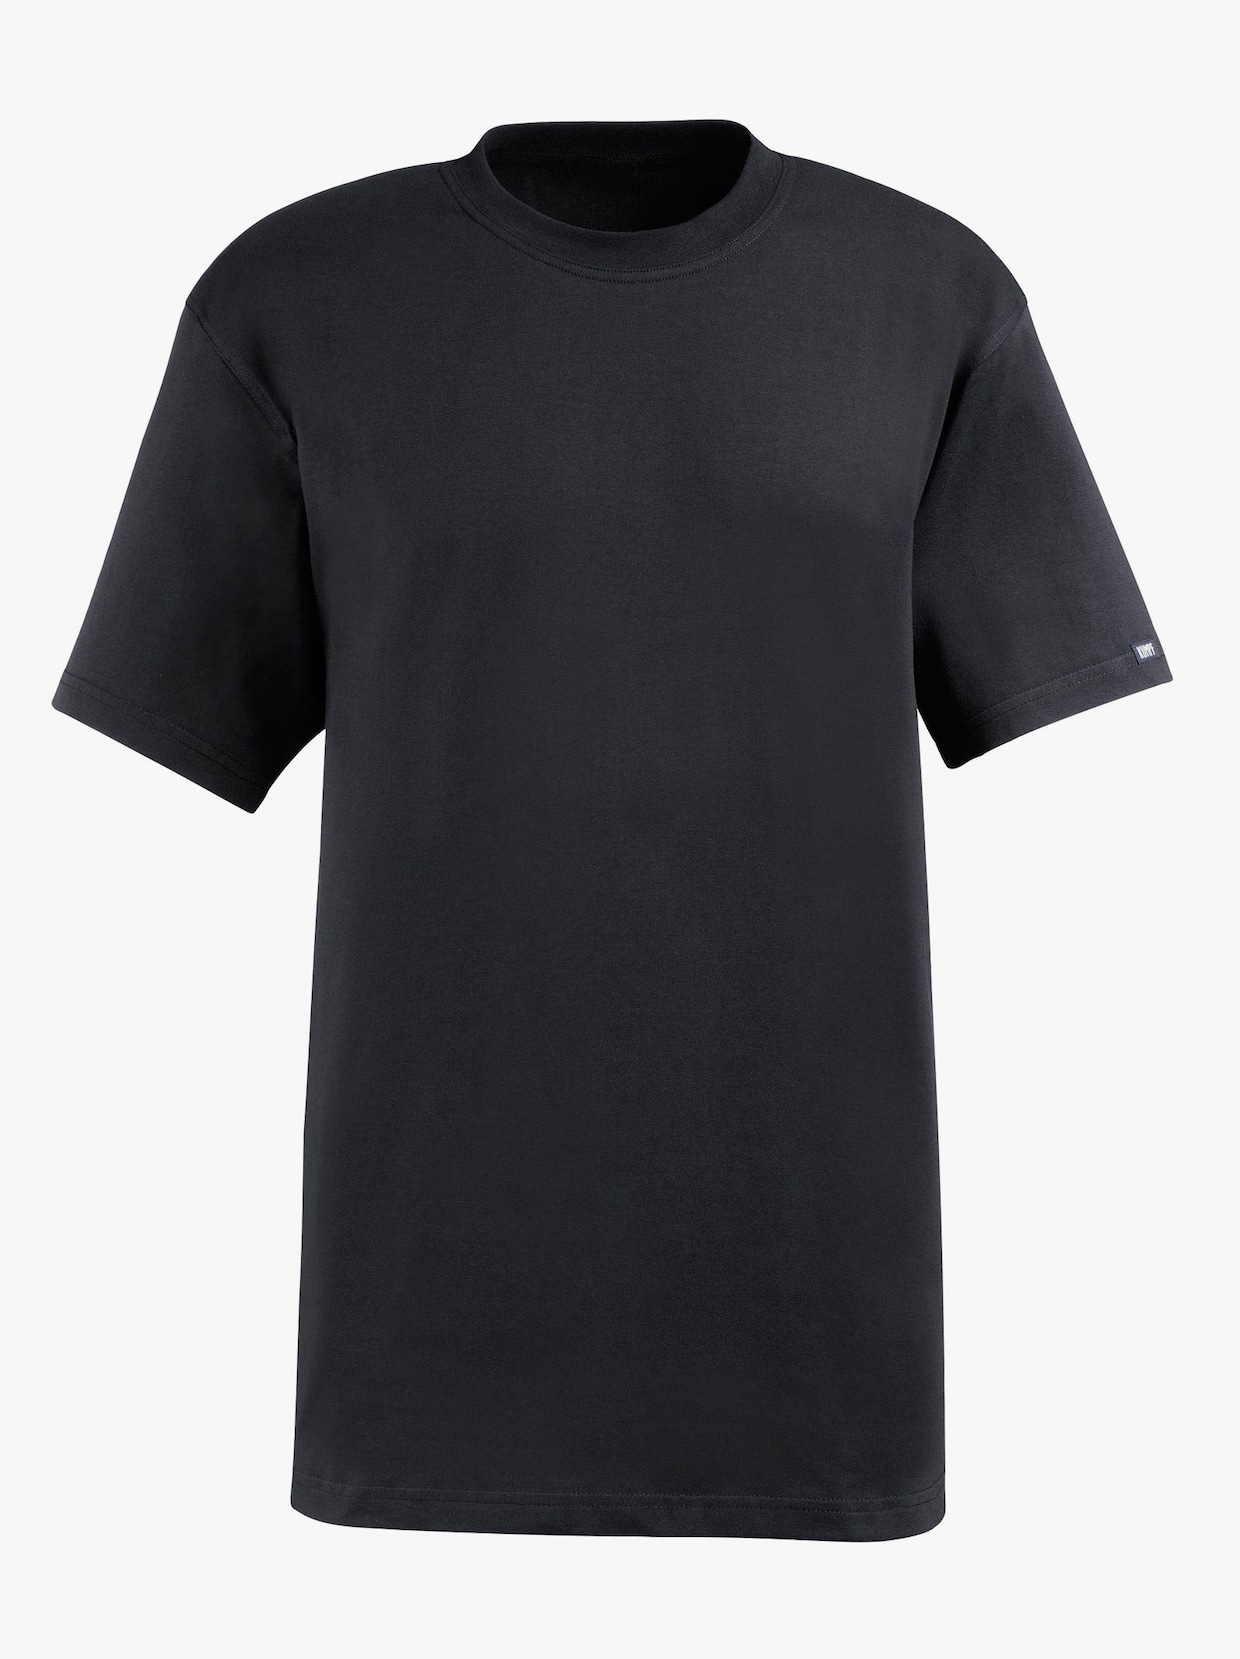 Kumpf Shirt - 2 Stück schwarz